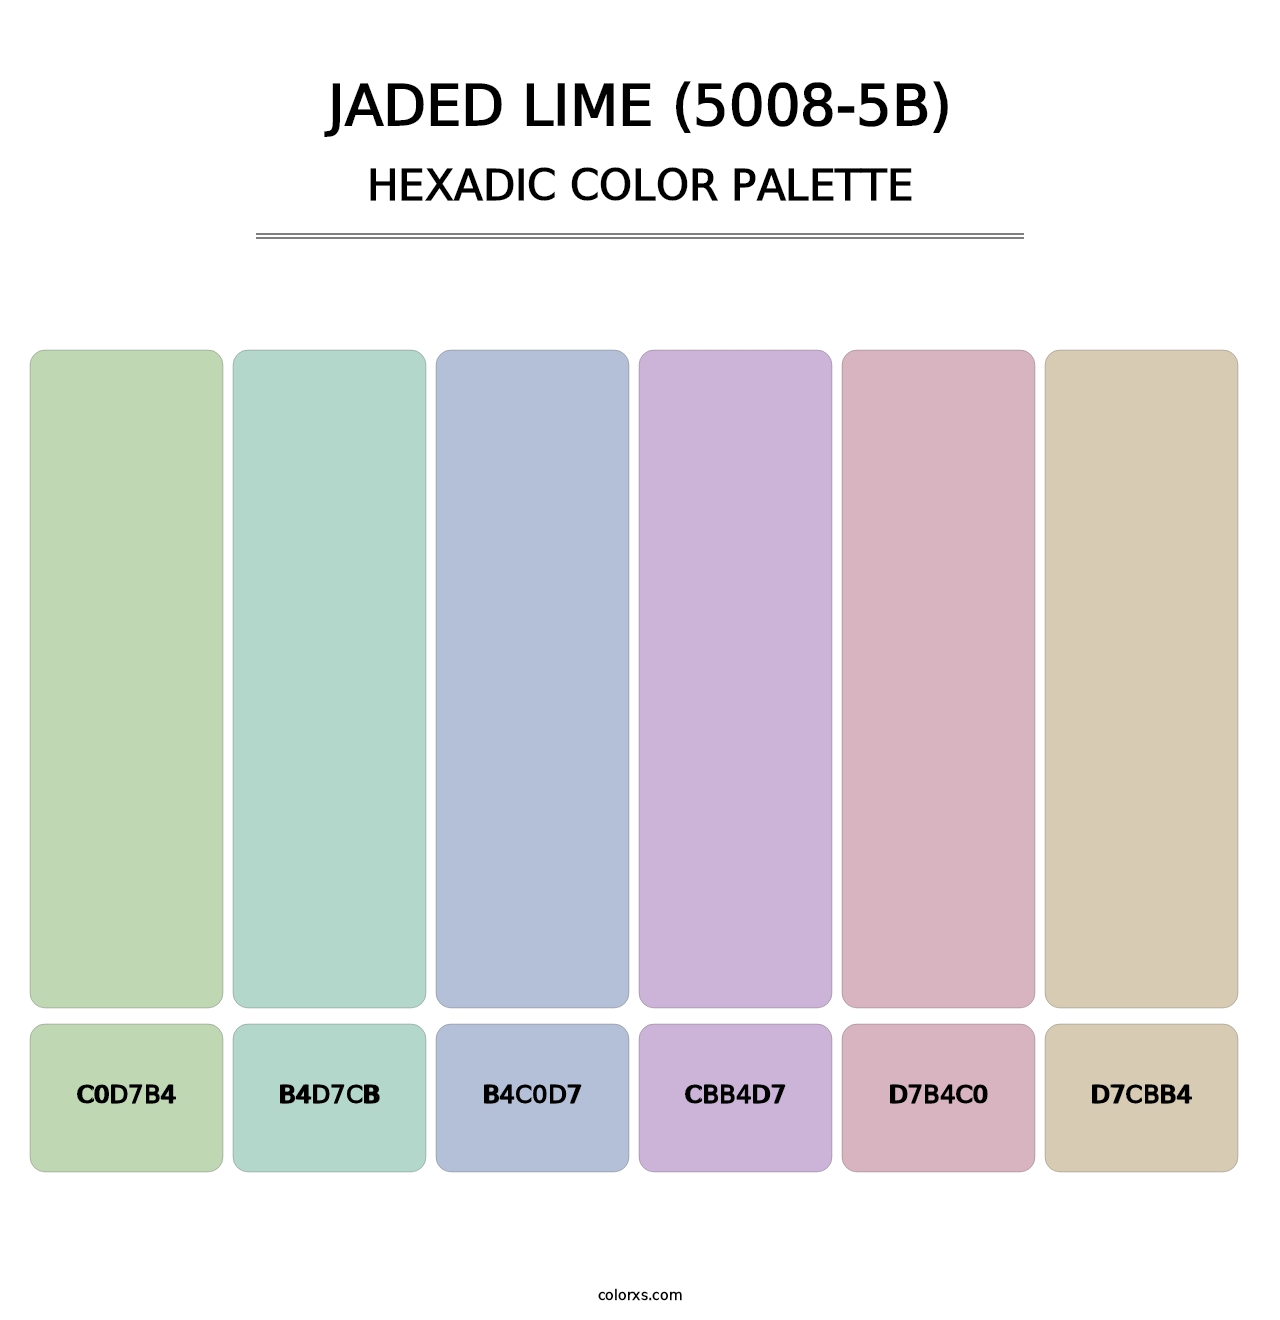 Jaded Lime (5008-5B) - Hexadic Color Palette